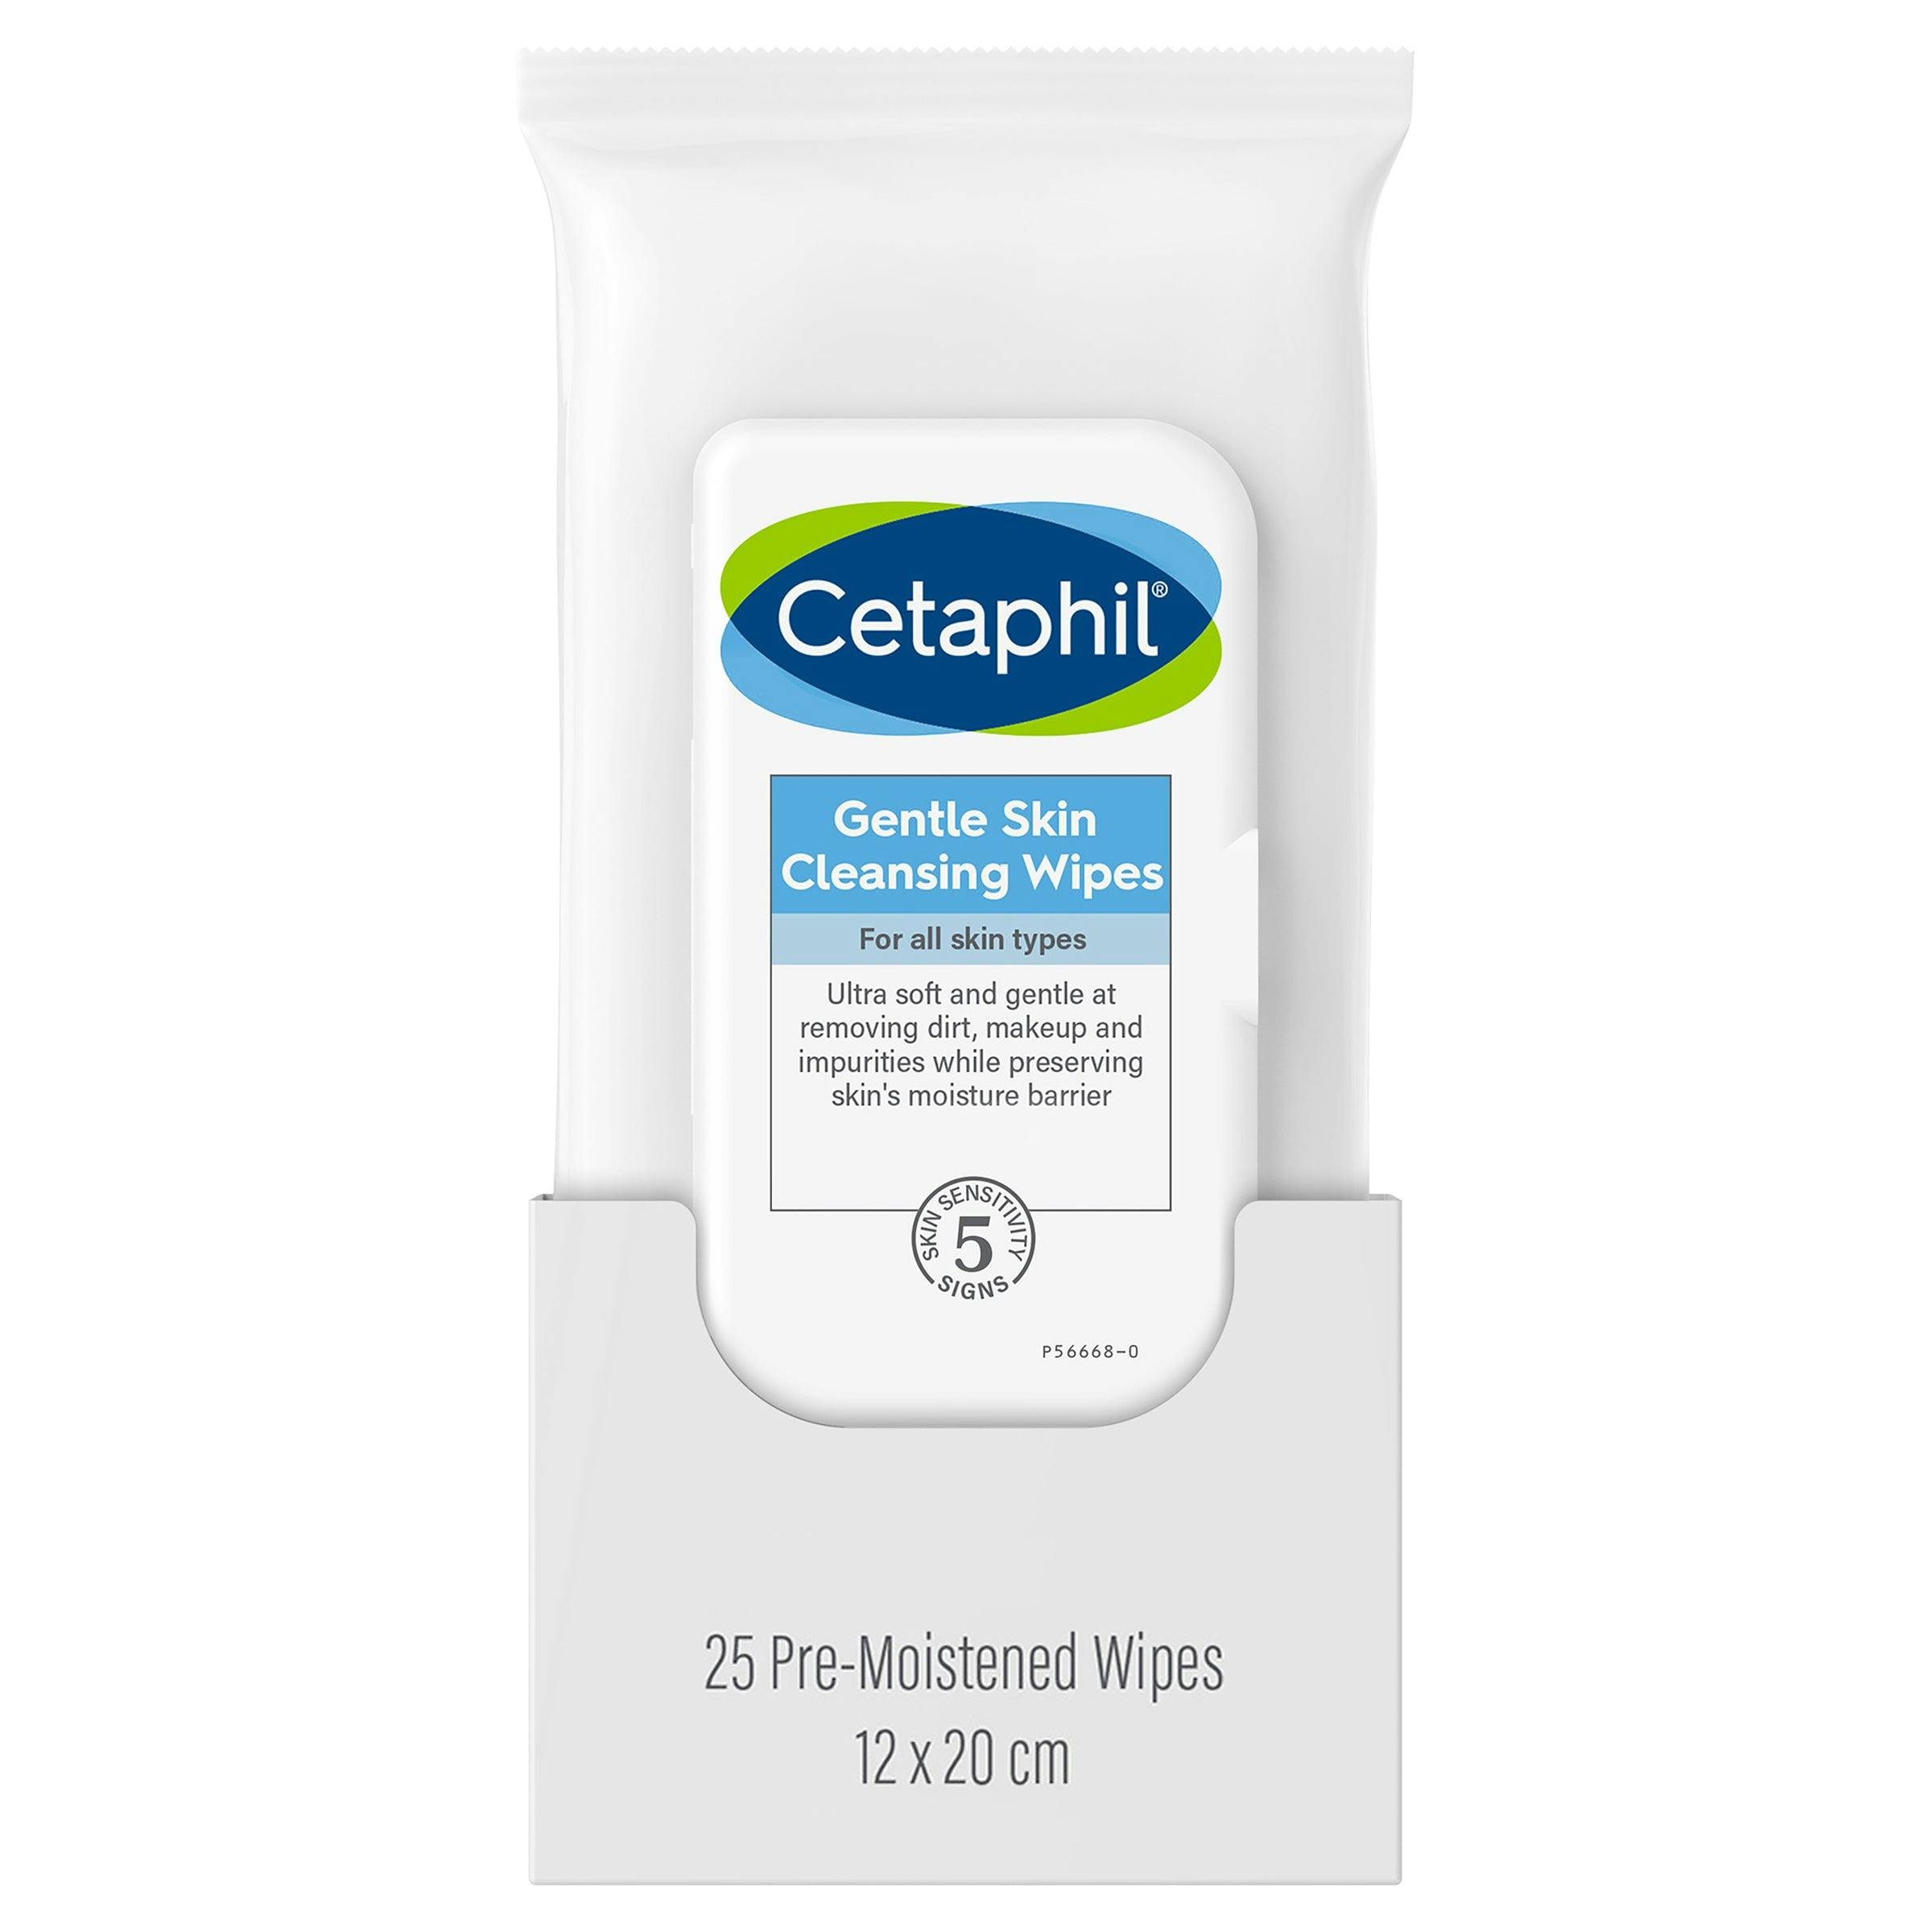 Cetaphil Gentle Skin Wipes / Cleansing Cloths 25pk